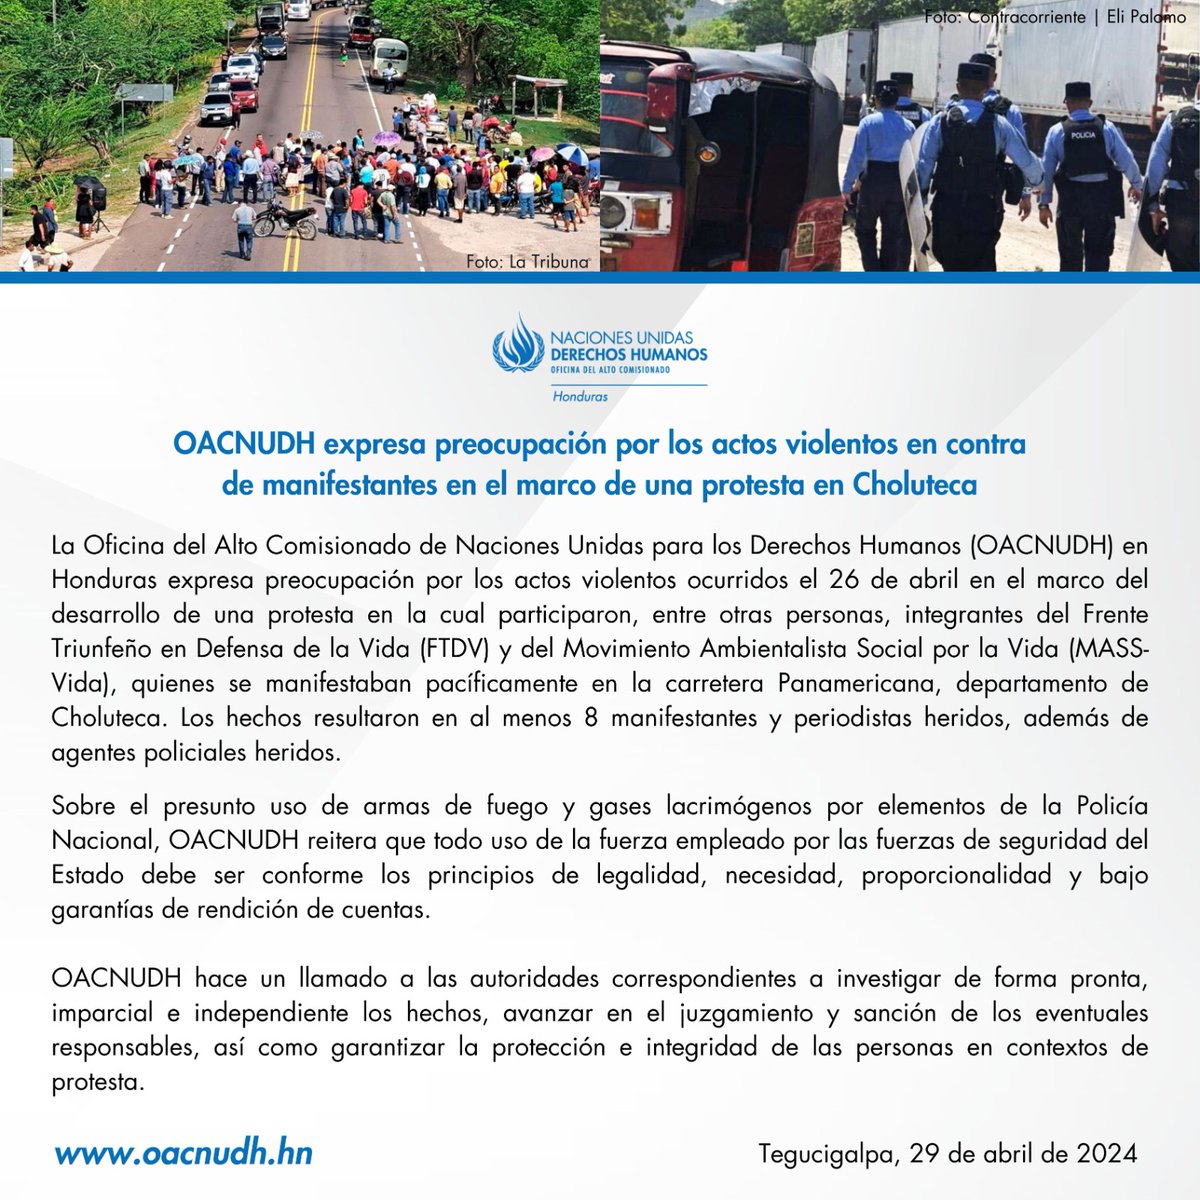 #OACNUDH expresa preocupación por los actos violentos en contra de manifestantes en el marco de una protesta en Choluteca